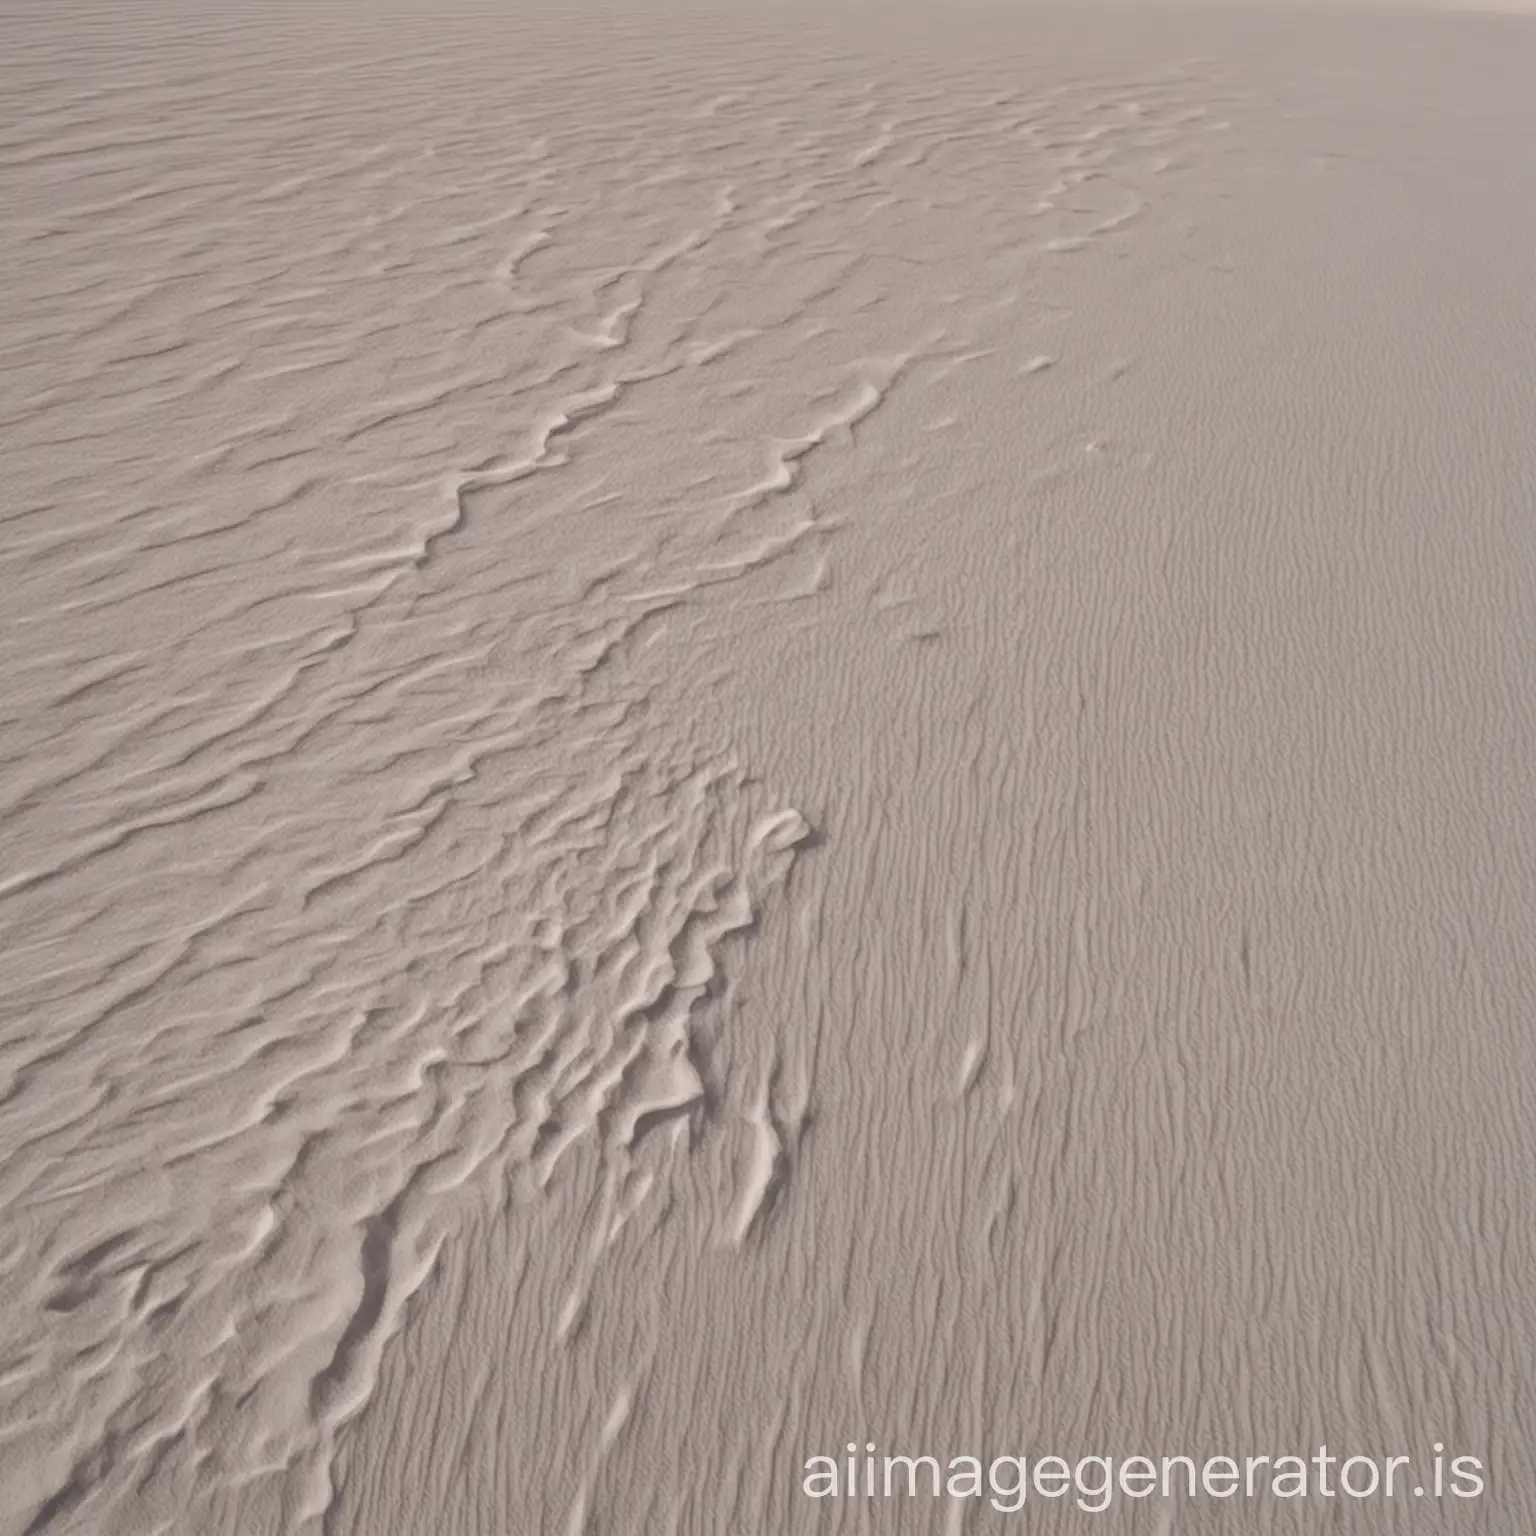 Vast-White-Desert-Landscape-A-Serene-Sea-of-Sand